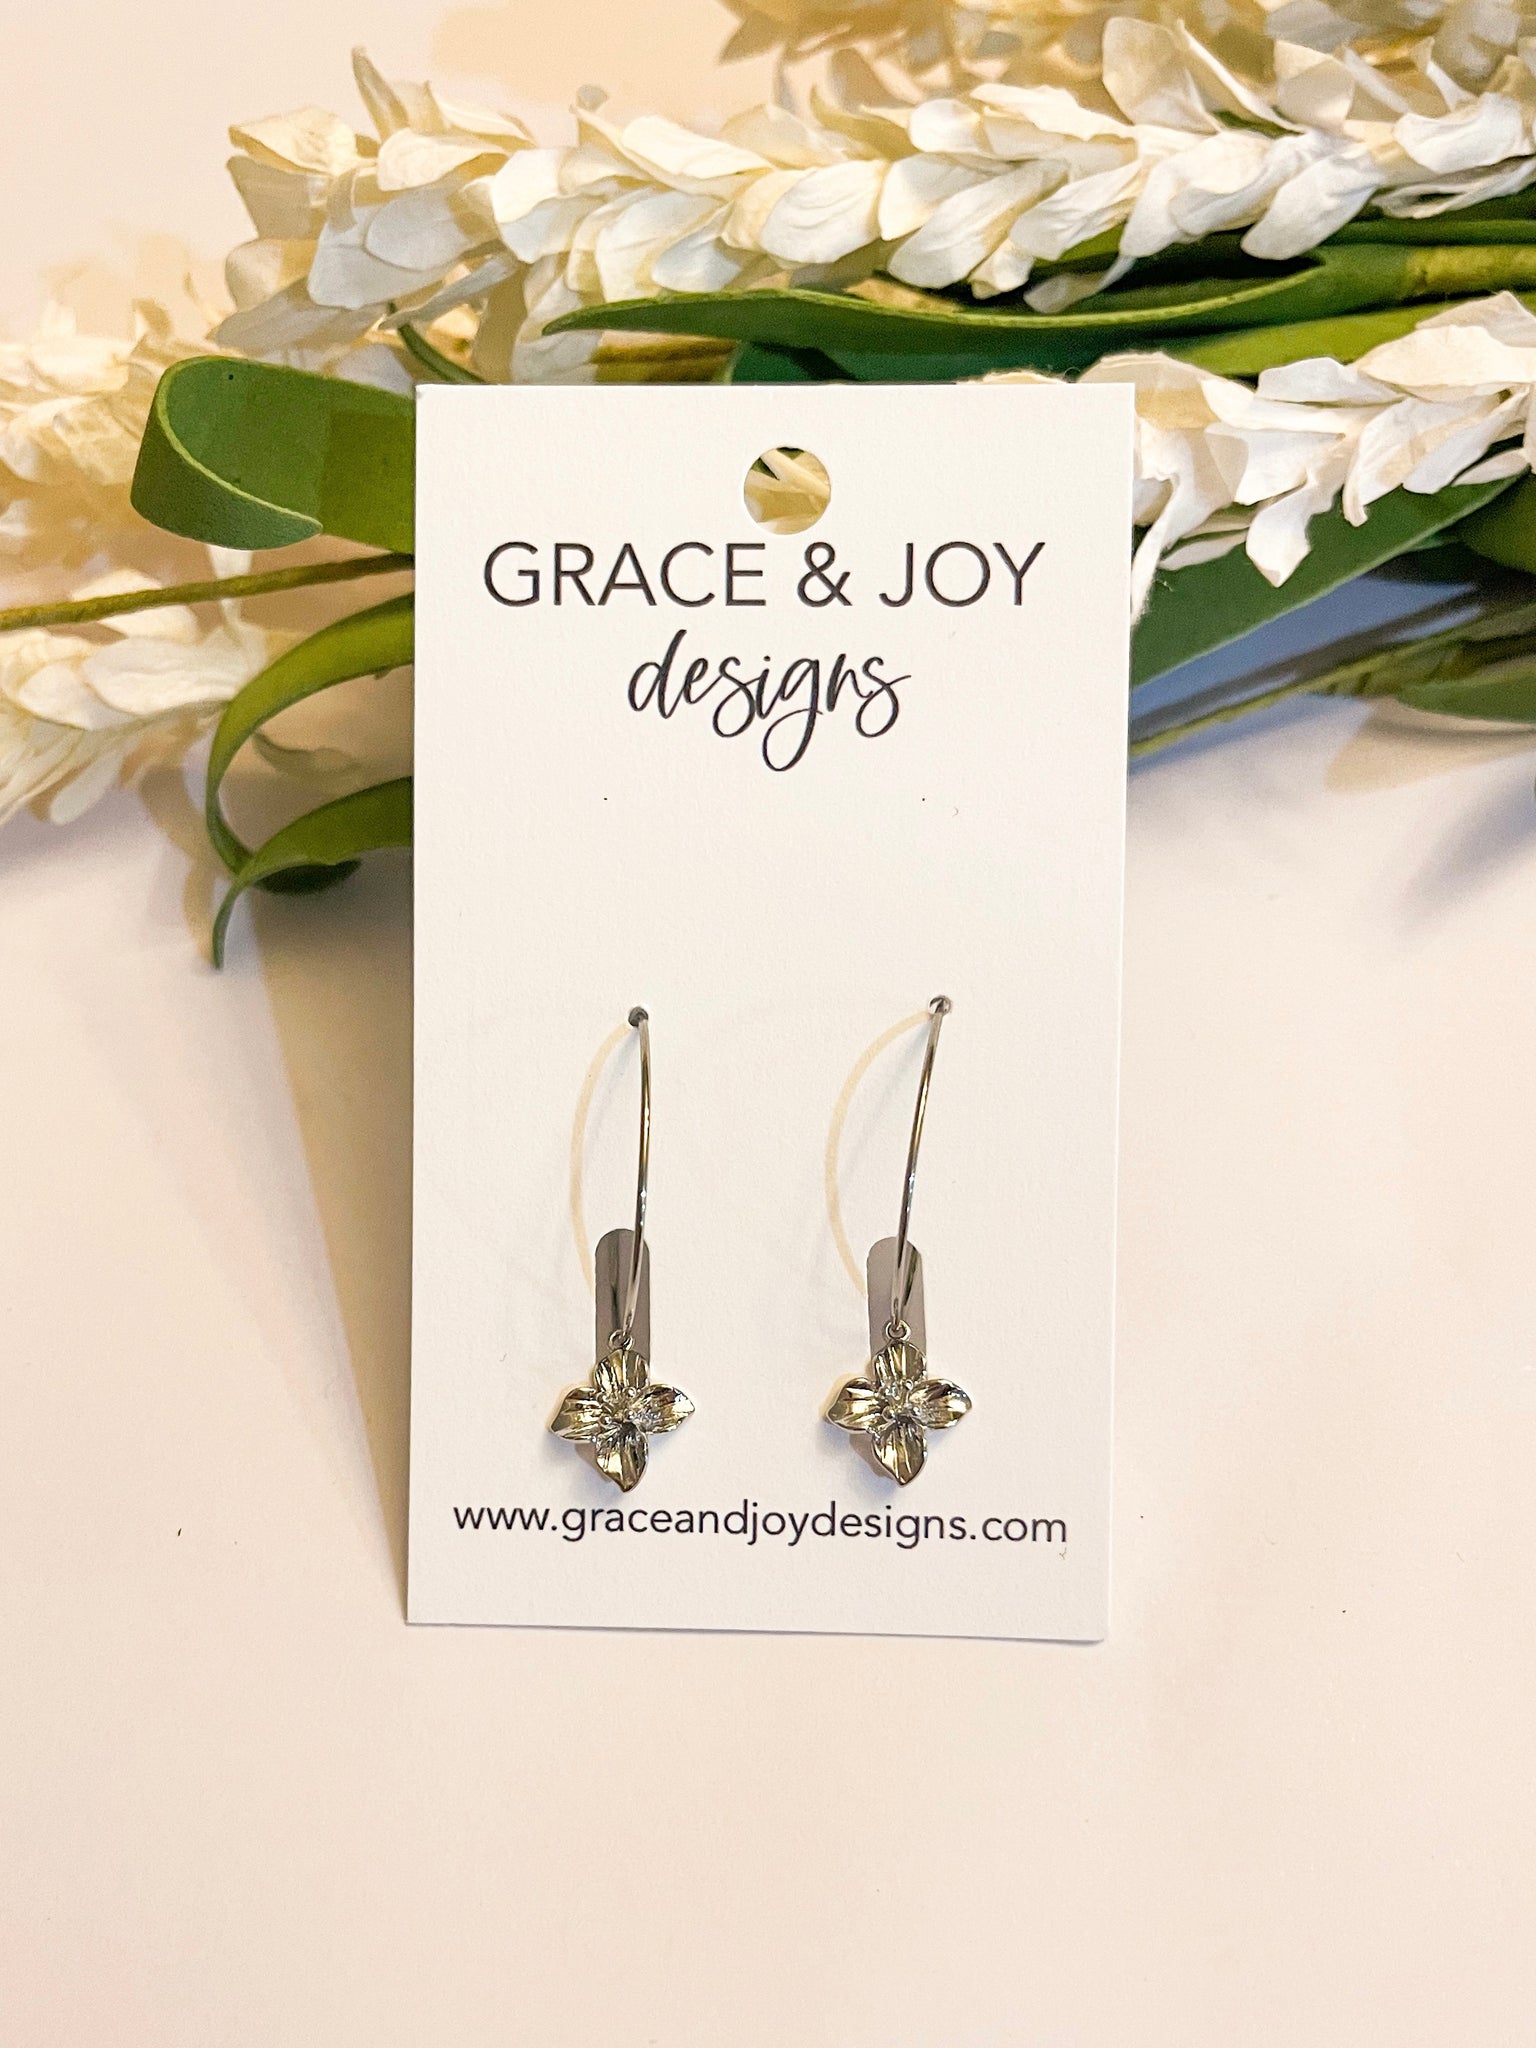 Silver Flower Hoop Earrings